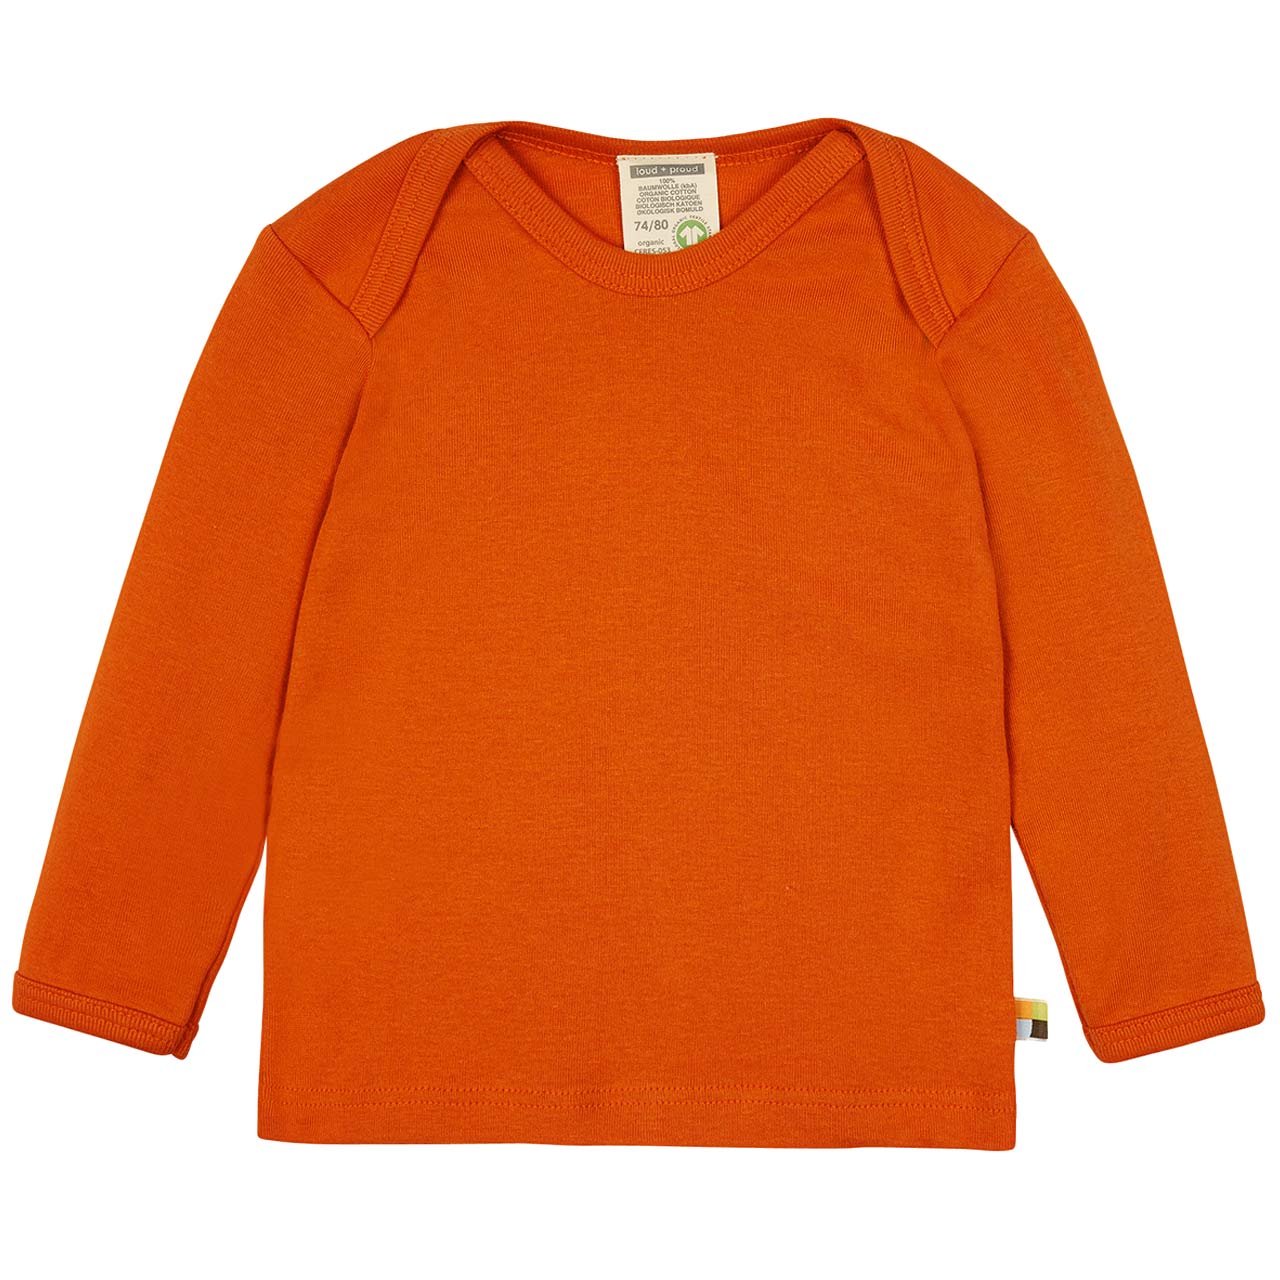 Feinripp Shirt weich und elastisch 100% Baumwolle rostorange